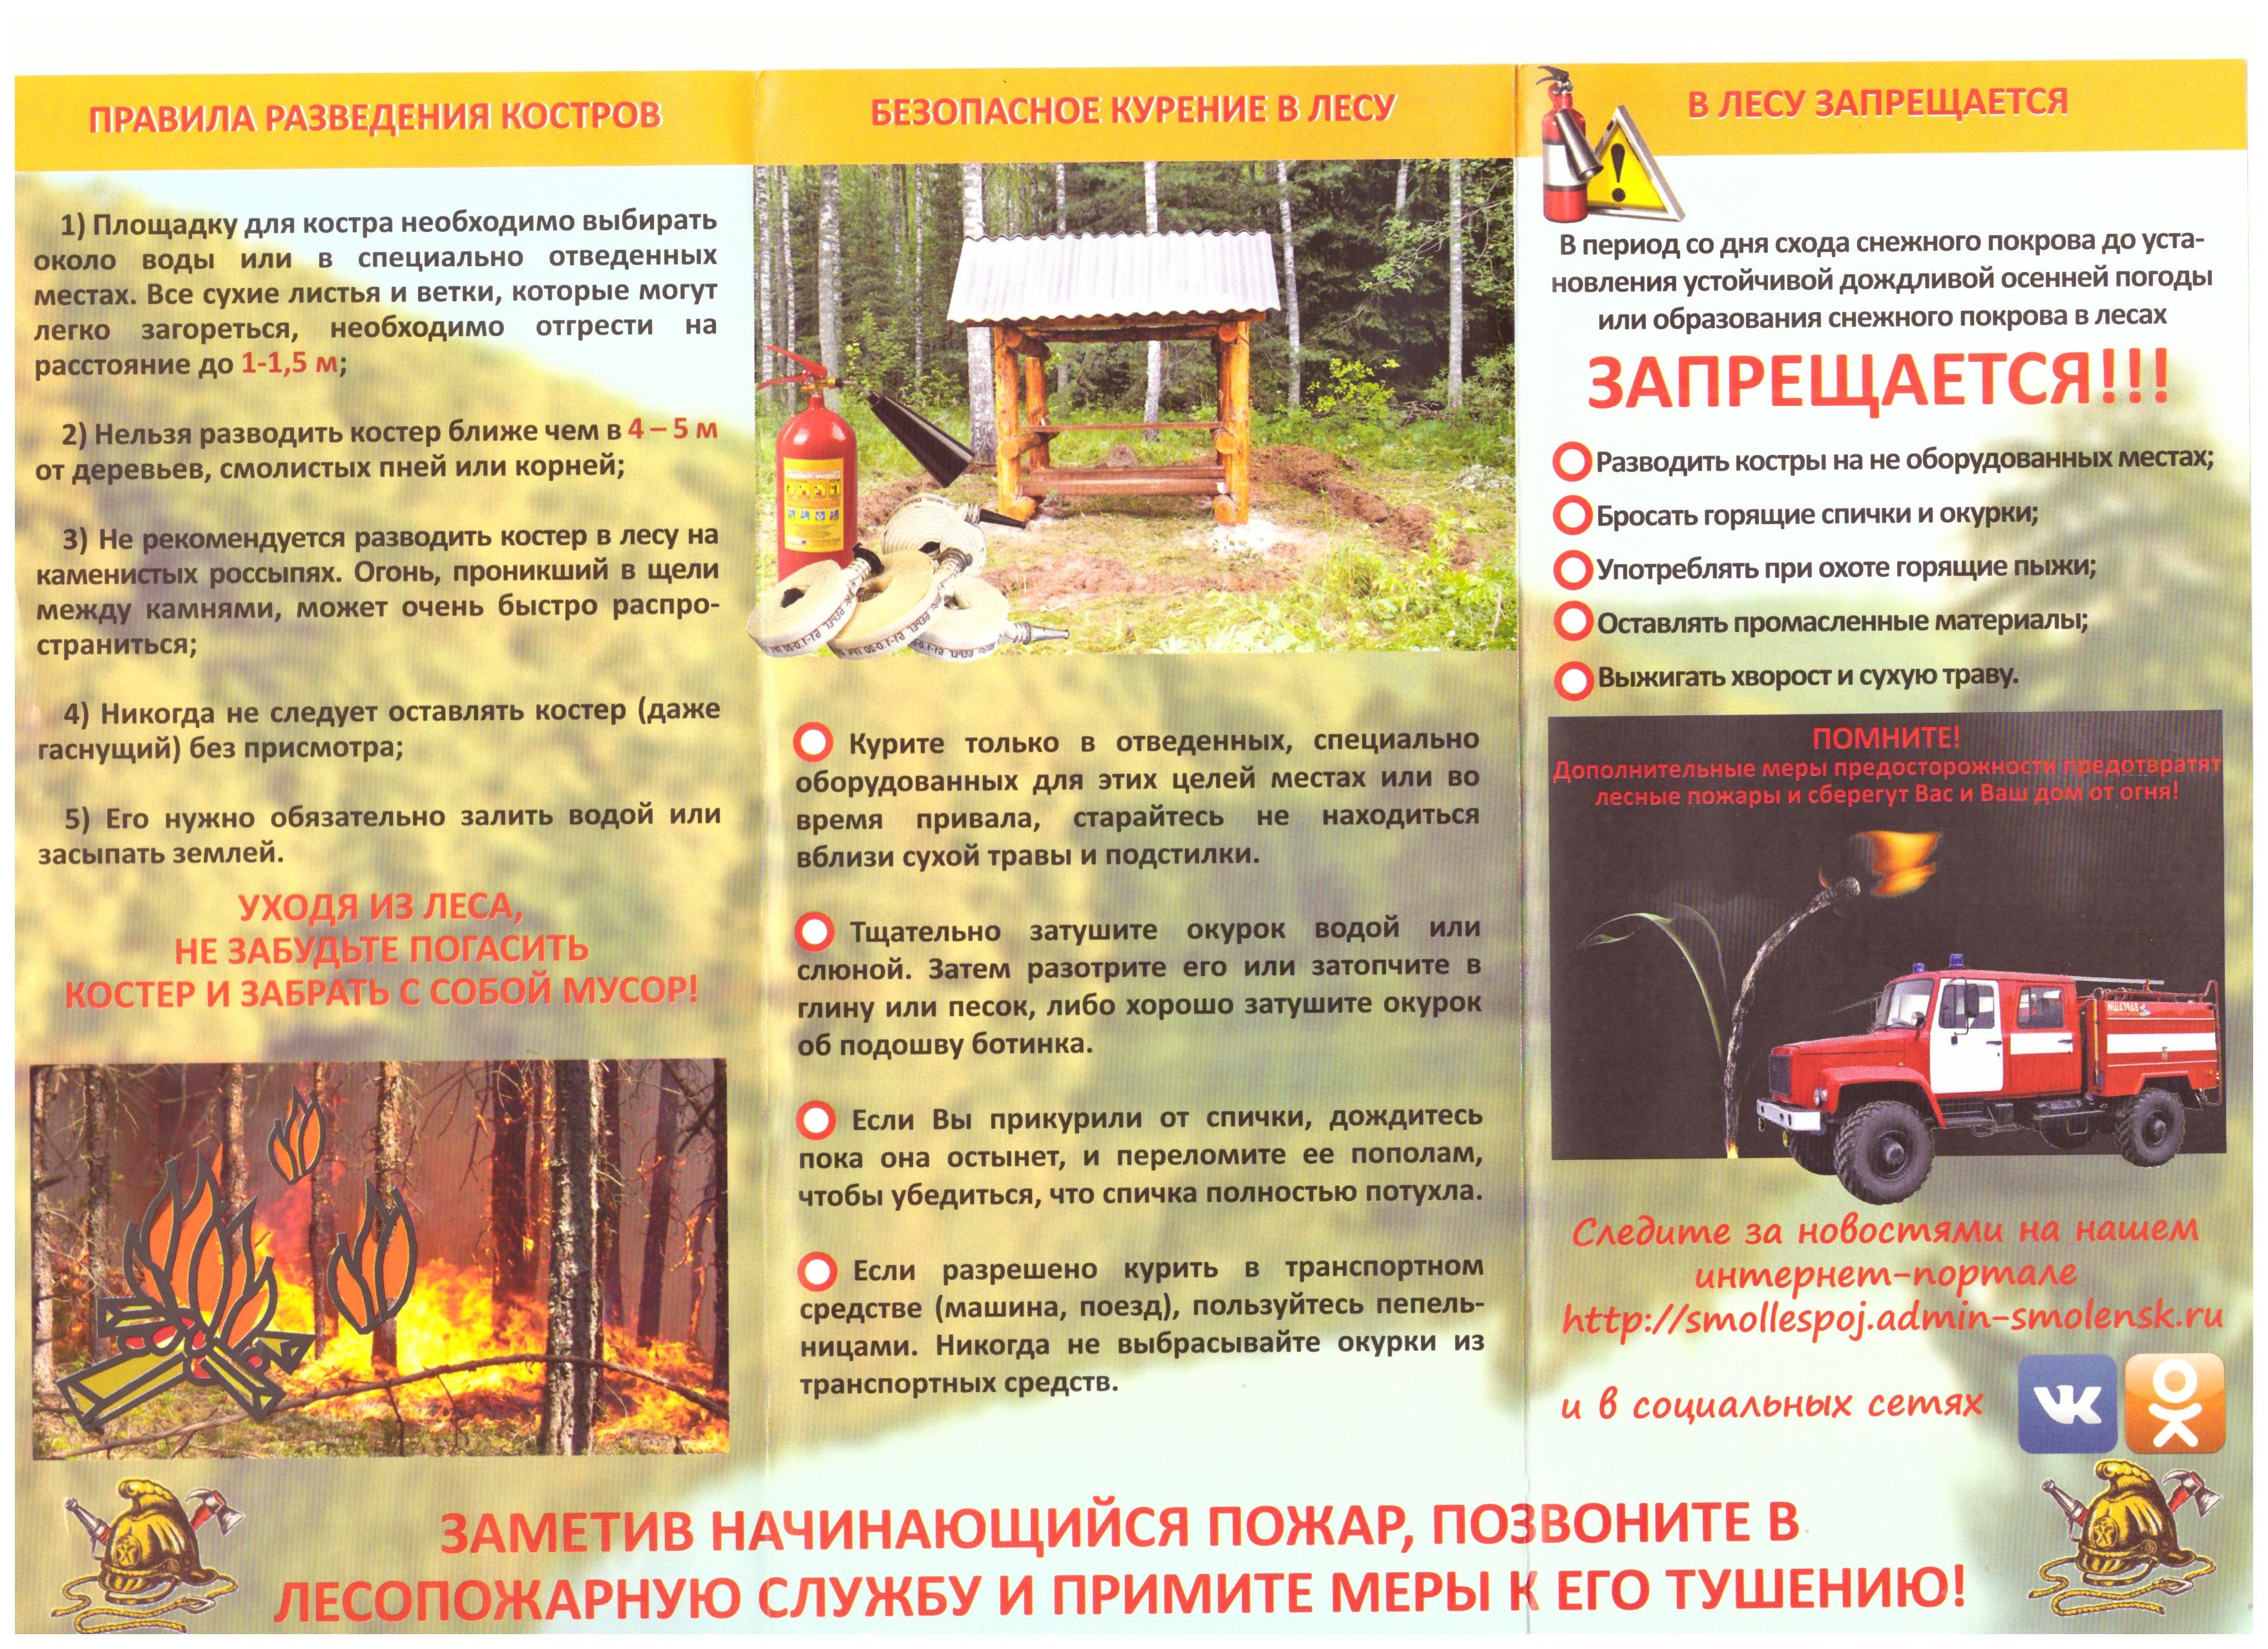 Пожарная безопасность при разведении костра. Перечислите меры пожарной безопасности при разжигании костра. Пожарная безопасность в лесу. Противопожарные меры в лесу. Пожарная безопасность в лесу костер.